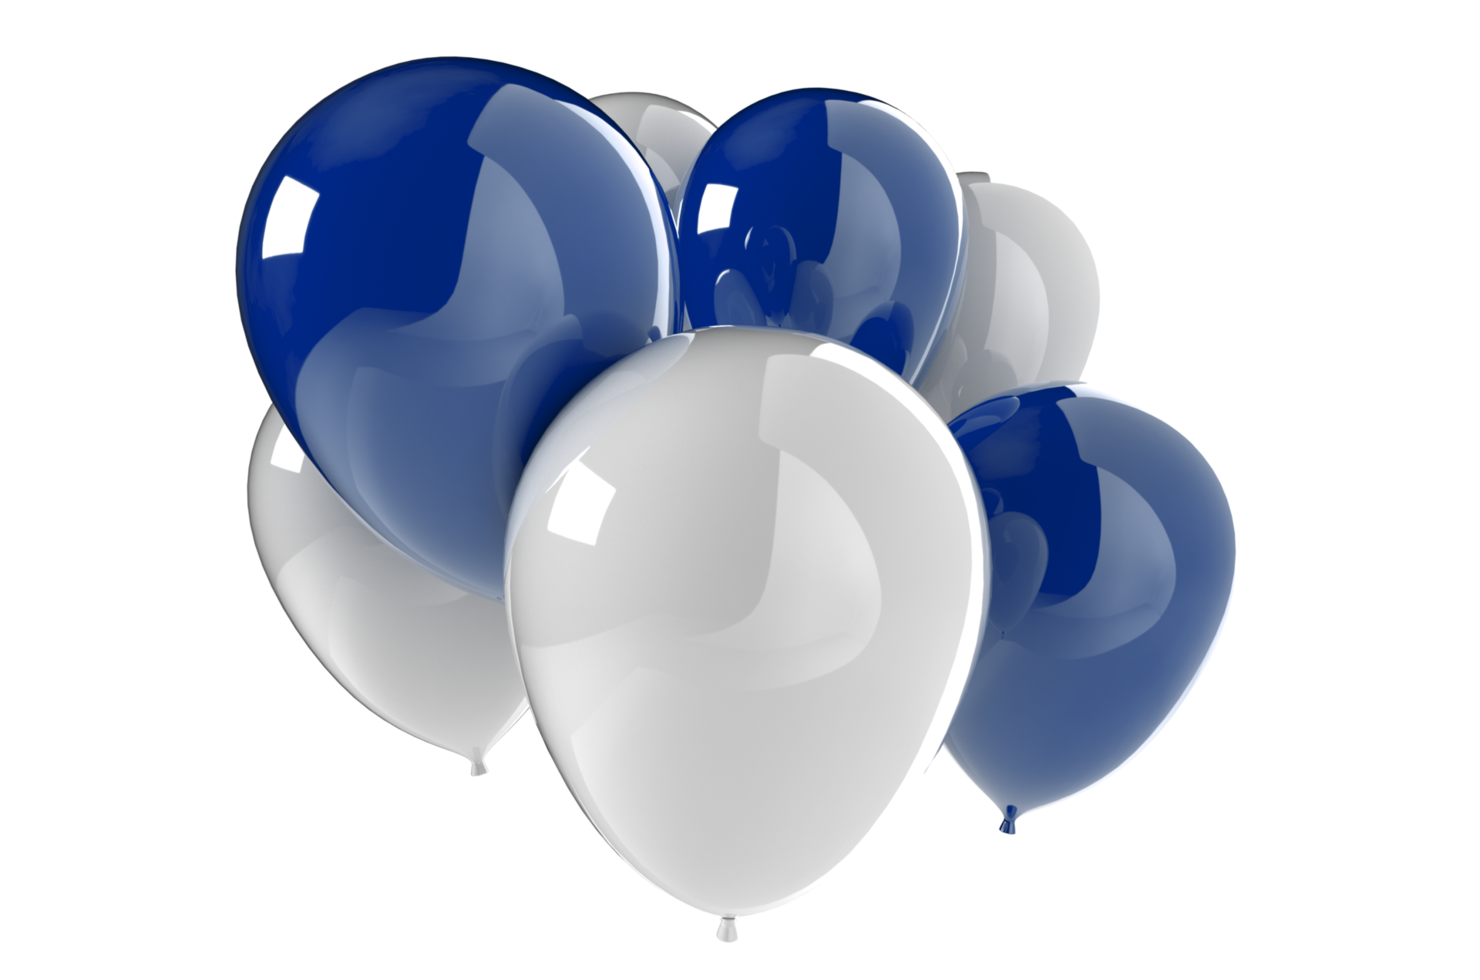 ballonnen 3d geven illustratie voor viering of verjaardag partij png